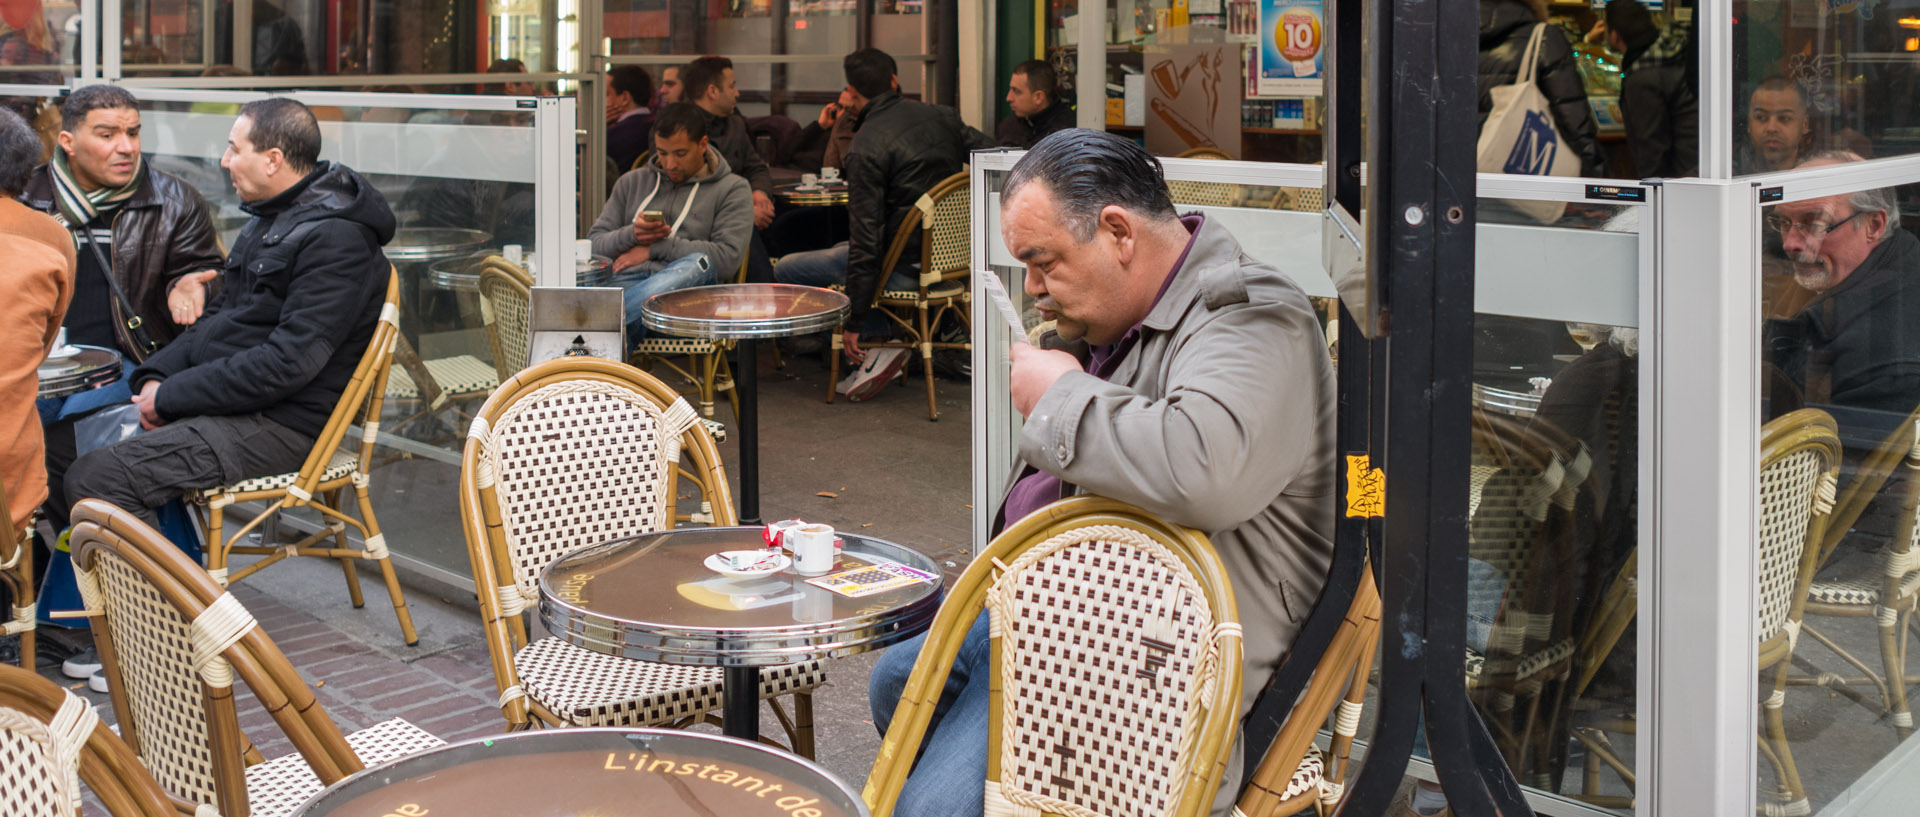 Consommateur à la terrasse d'un café, place Rihour, à Lille.